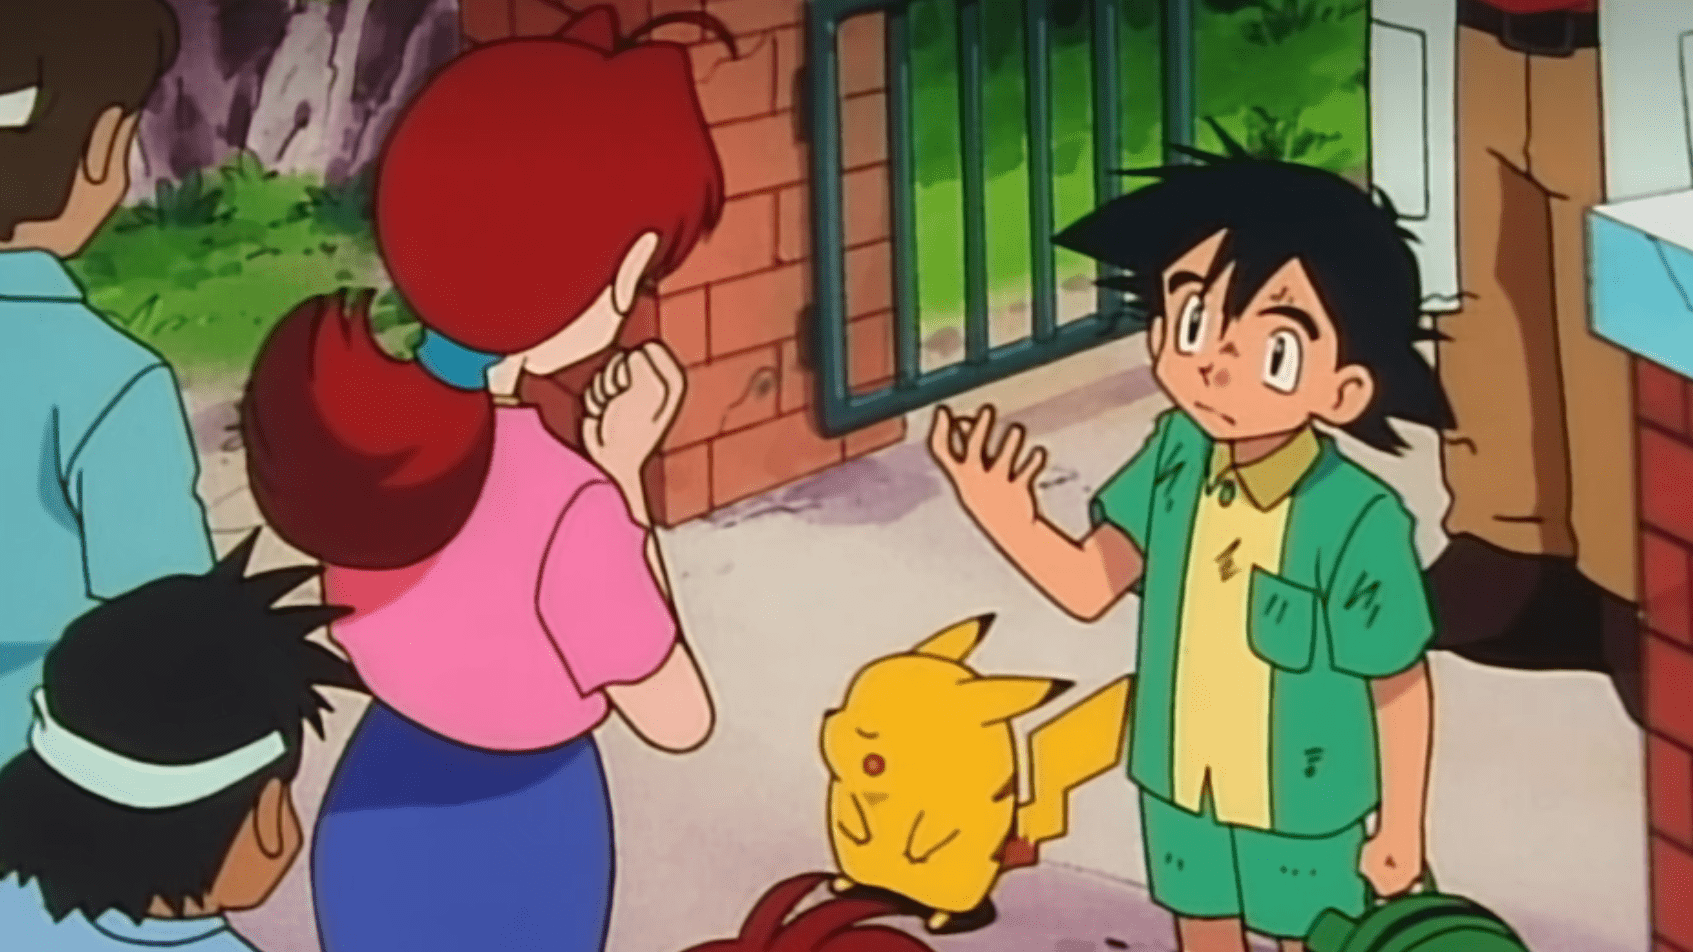 Dargestellt ist ein Screenshot aus dem erste Pokémon Anime Indigo League. Zu sehen ist der jungte Ash, der gerade sein Pikachu erhalten hat. Pikachu weigert sich in dieser Szene in seinen Pokéball zu gehen. 